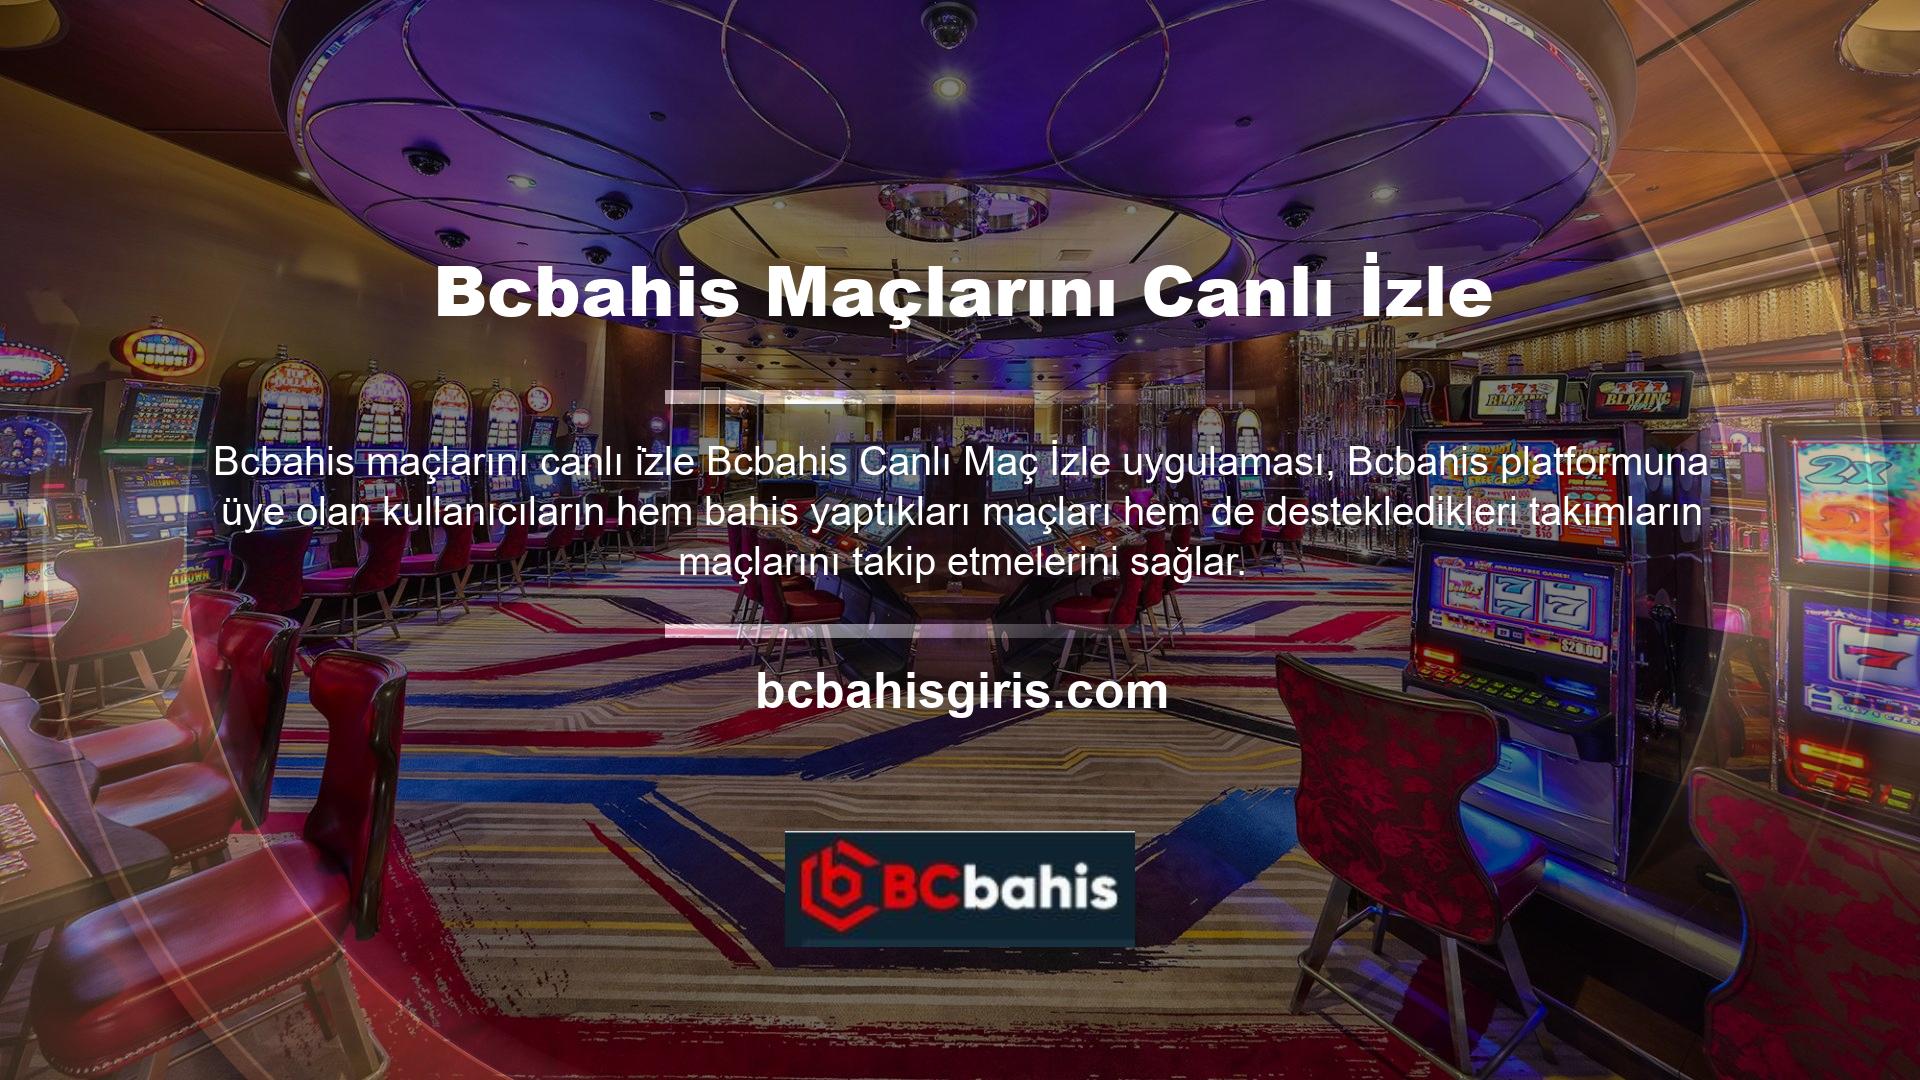 Bu hizmet, Bcbahis TV adlı başka bir uygulama ve platform tarafından sağlanmaktadır